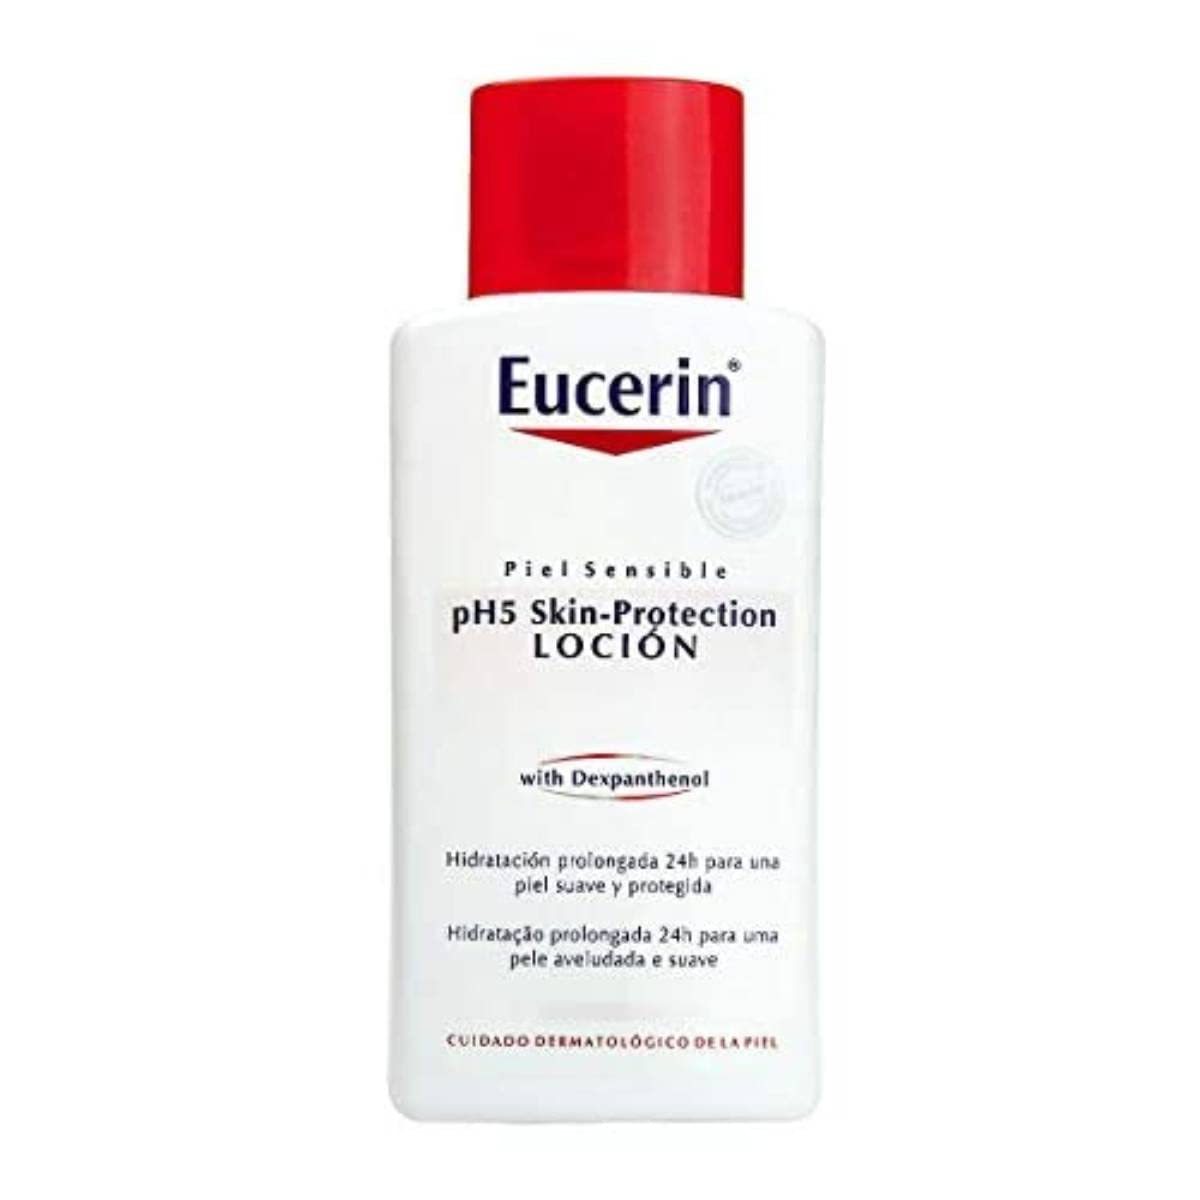 Eucerin Ph5 Loción Piel Sensitive 200 ml